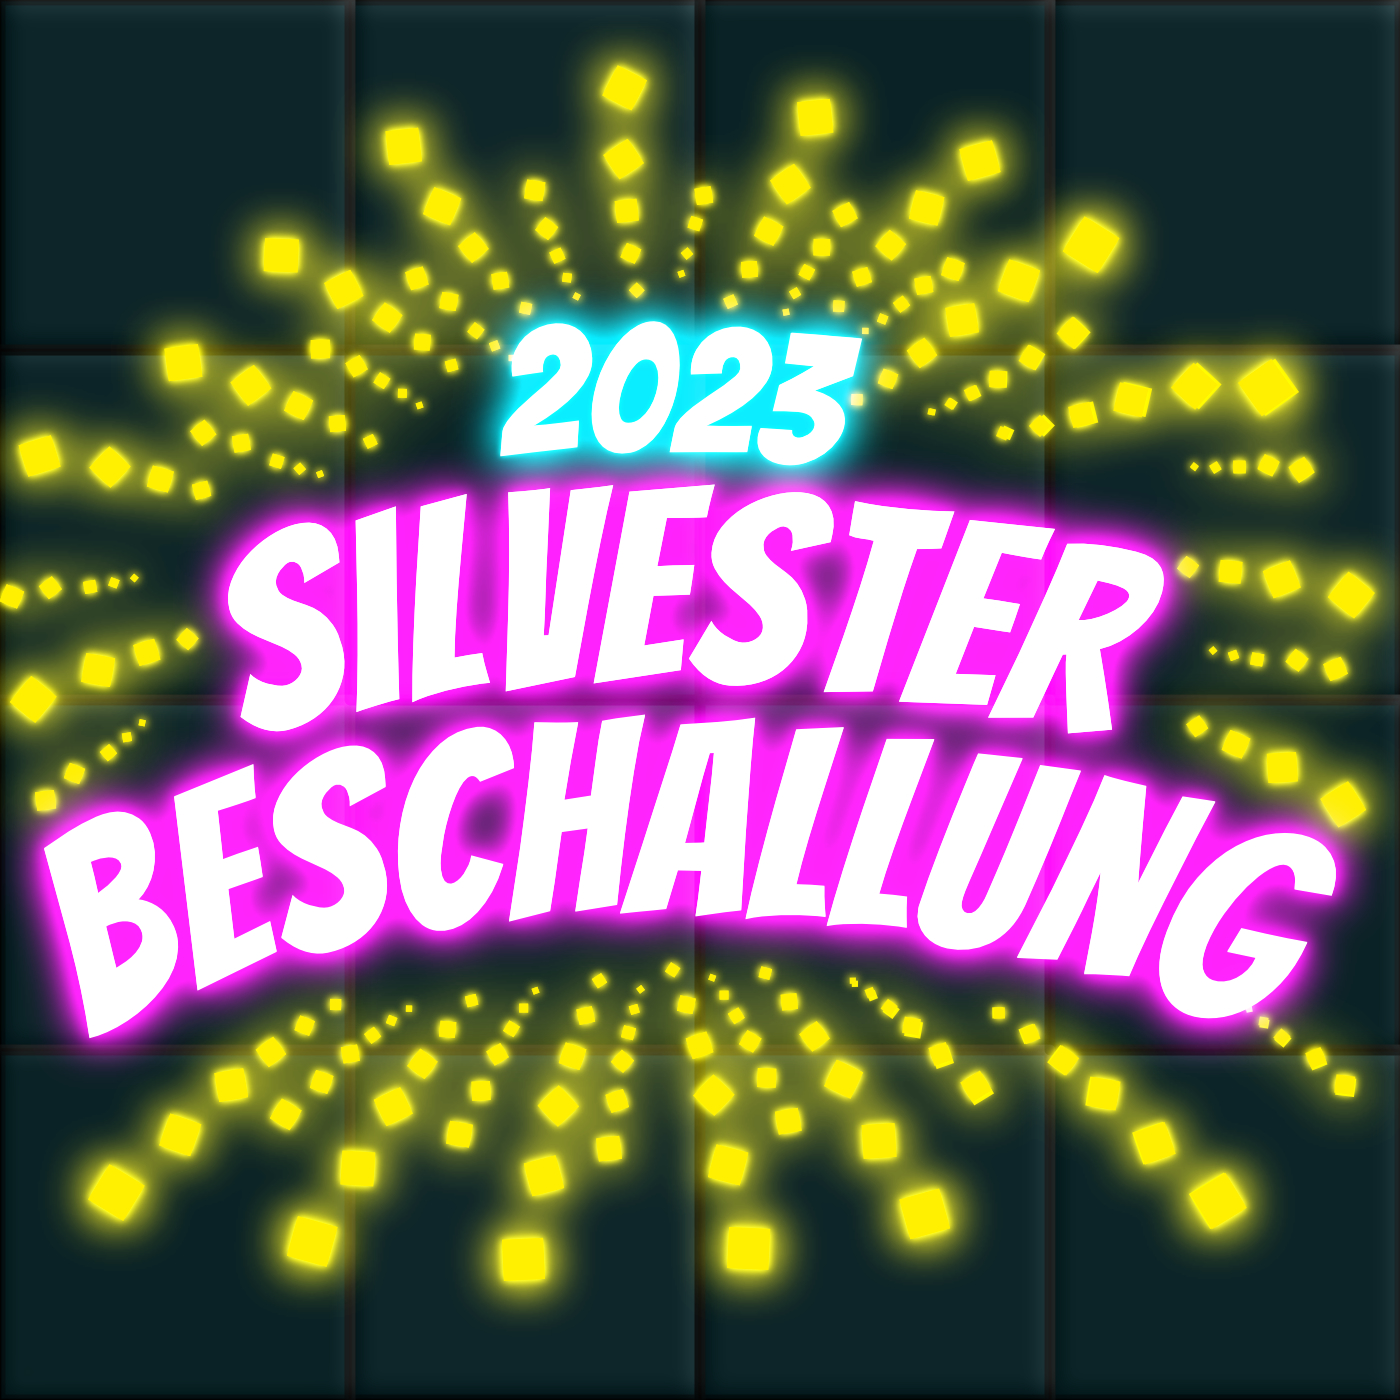 pixelvester - Silvesterbeschallung 2022/23